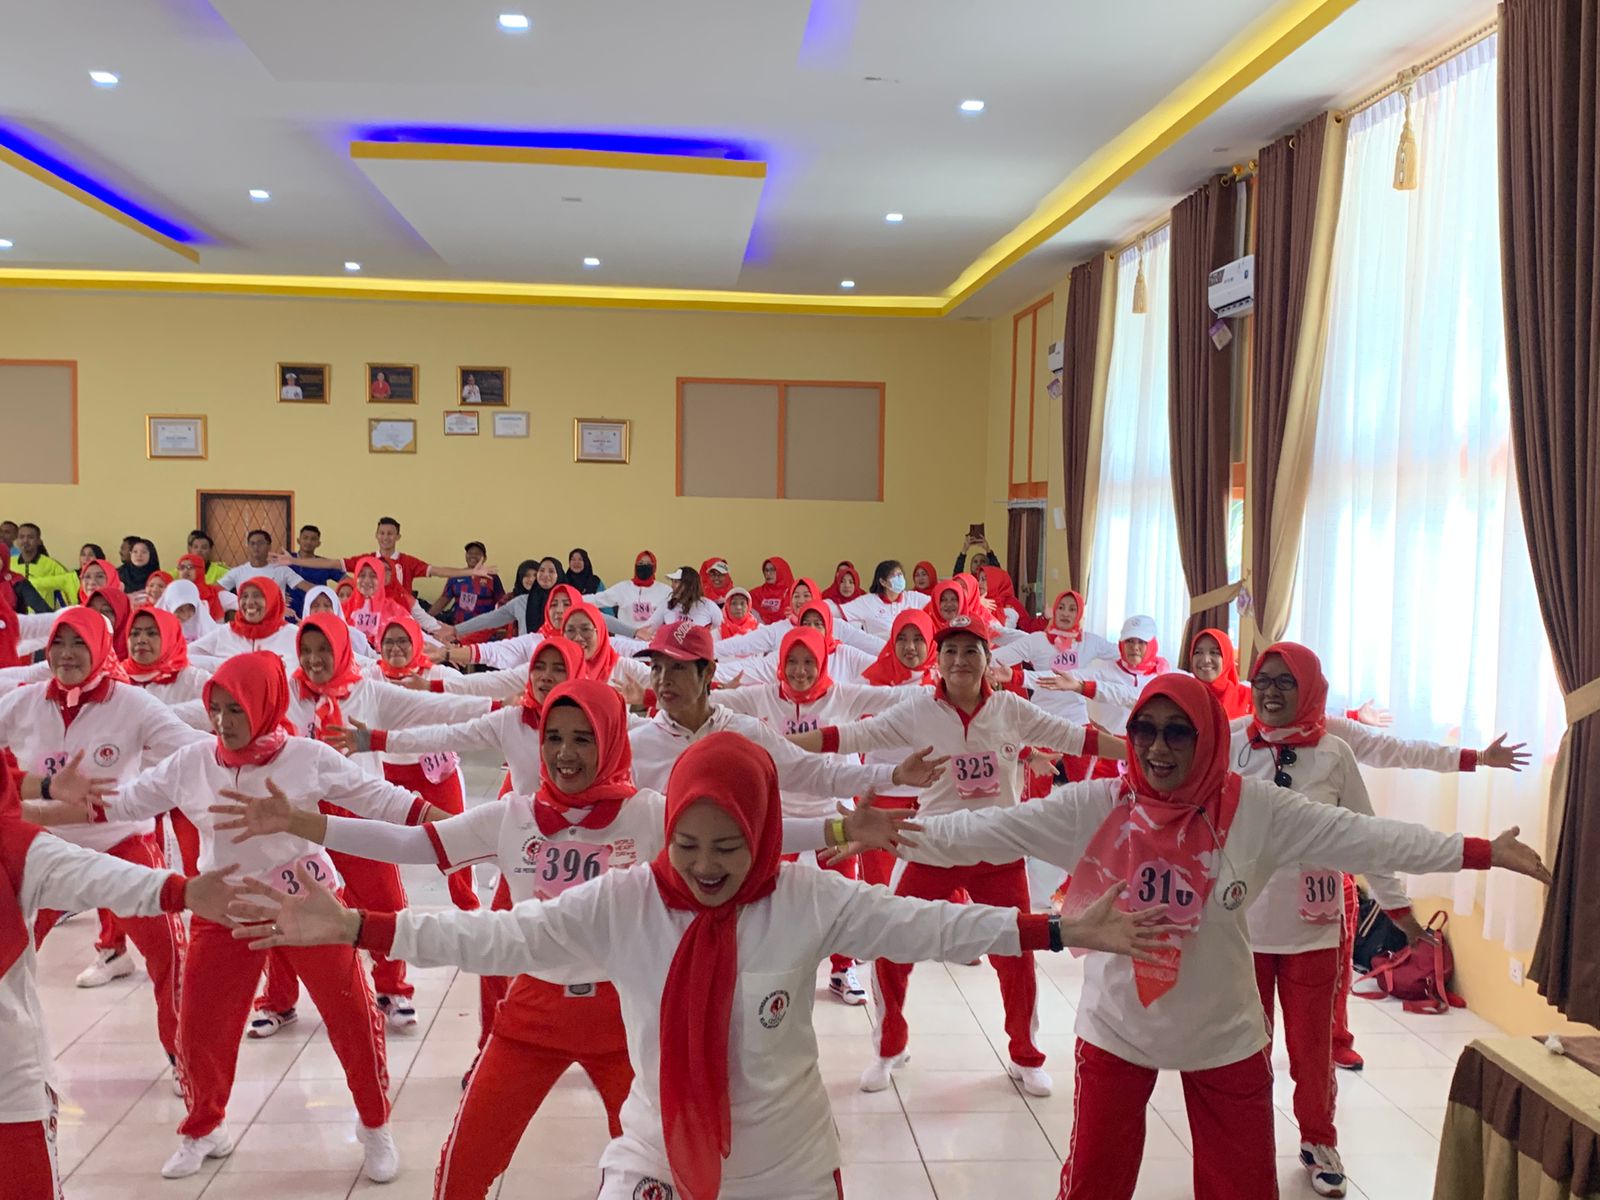 Ketua DPRD Tanjungpinang Pimpin Senam Jantung Sehat untuk Semua, di Aula SMA Negeri 4 Tanjungpinang, Minggu (25/9).